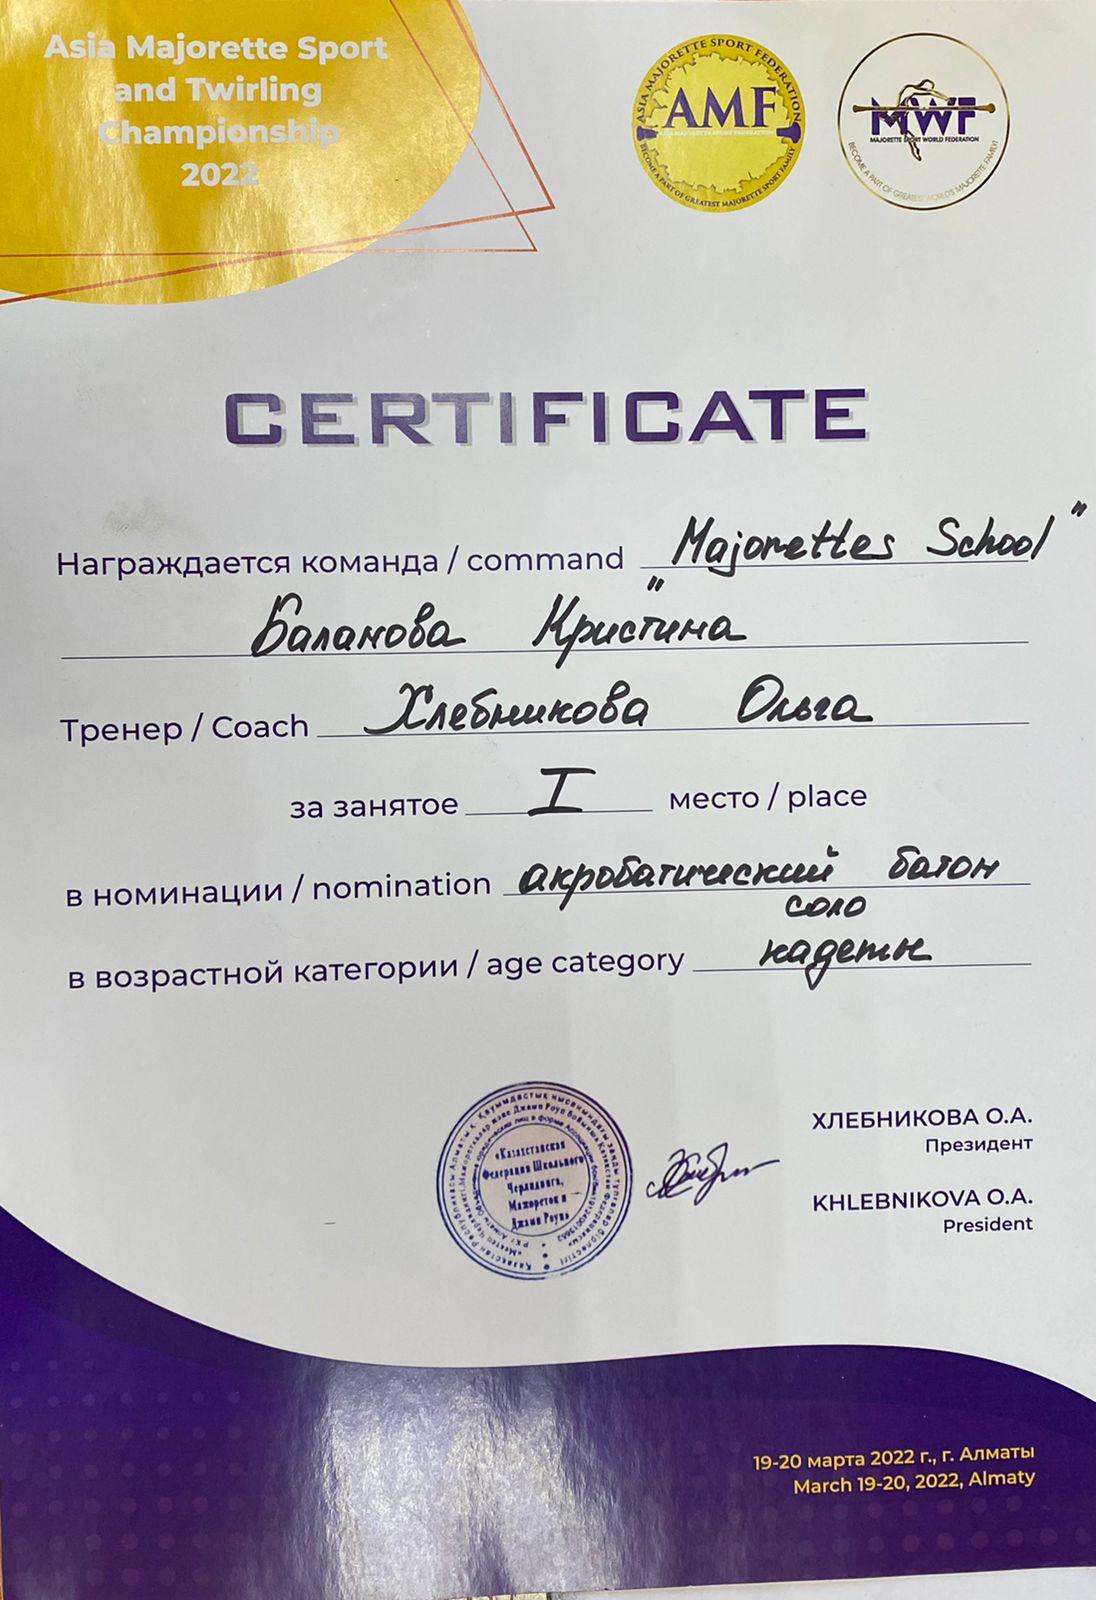 ученица 3 А класса Баланова Кристина заняла 1 место в номинации "акробатический батон"